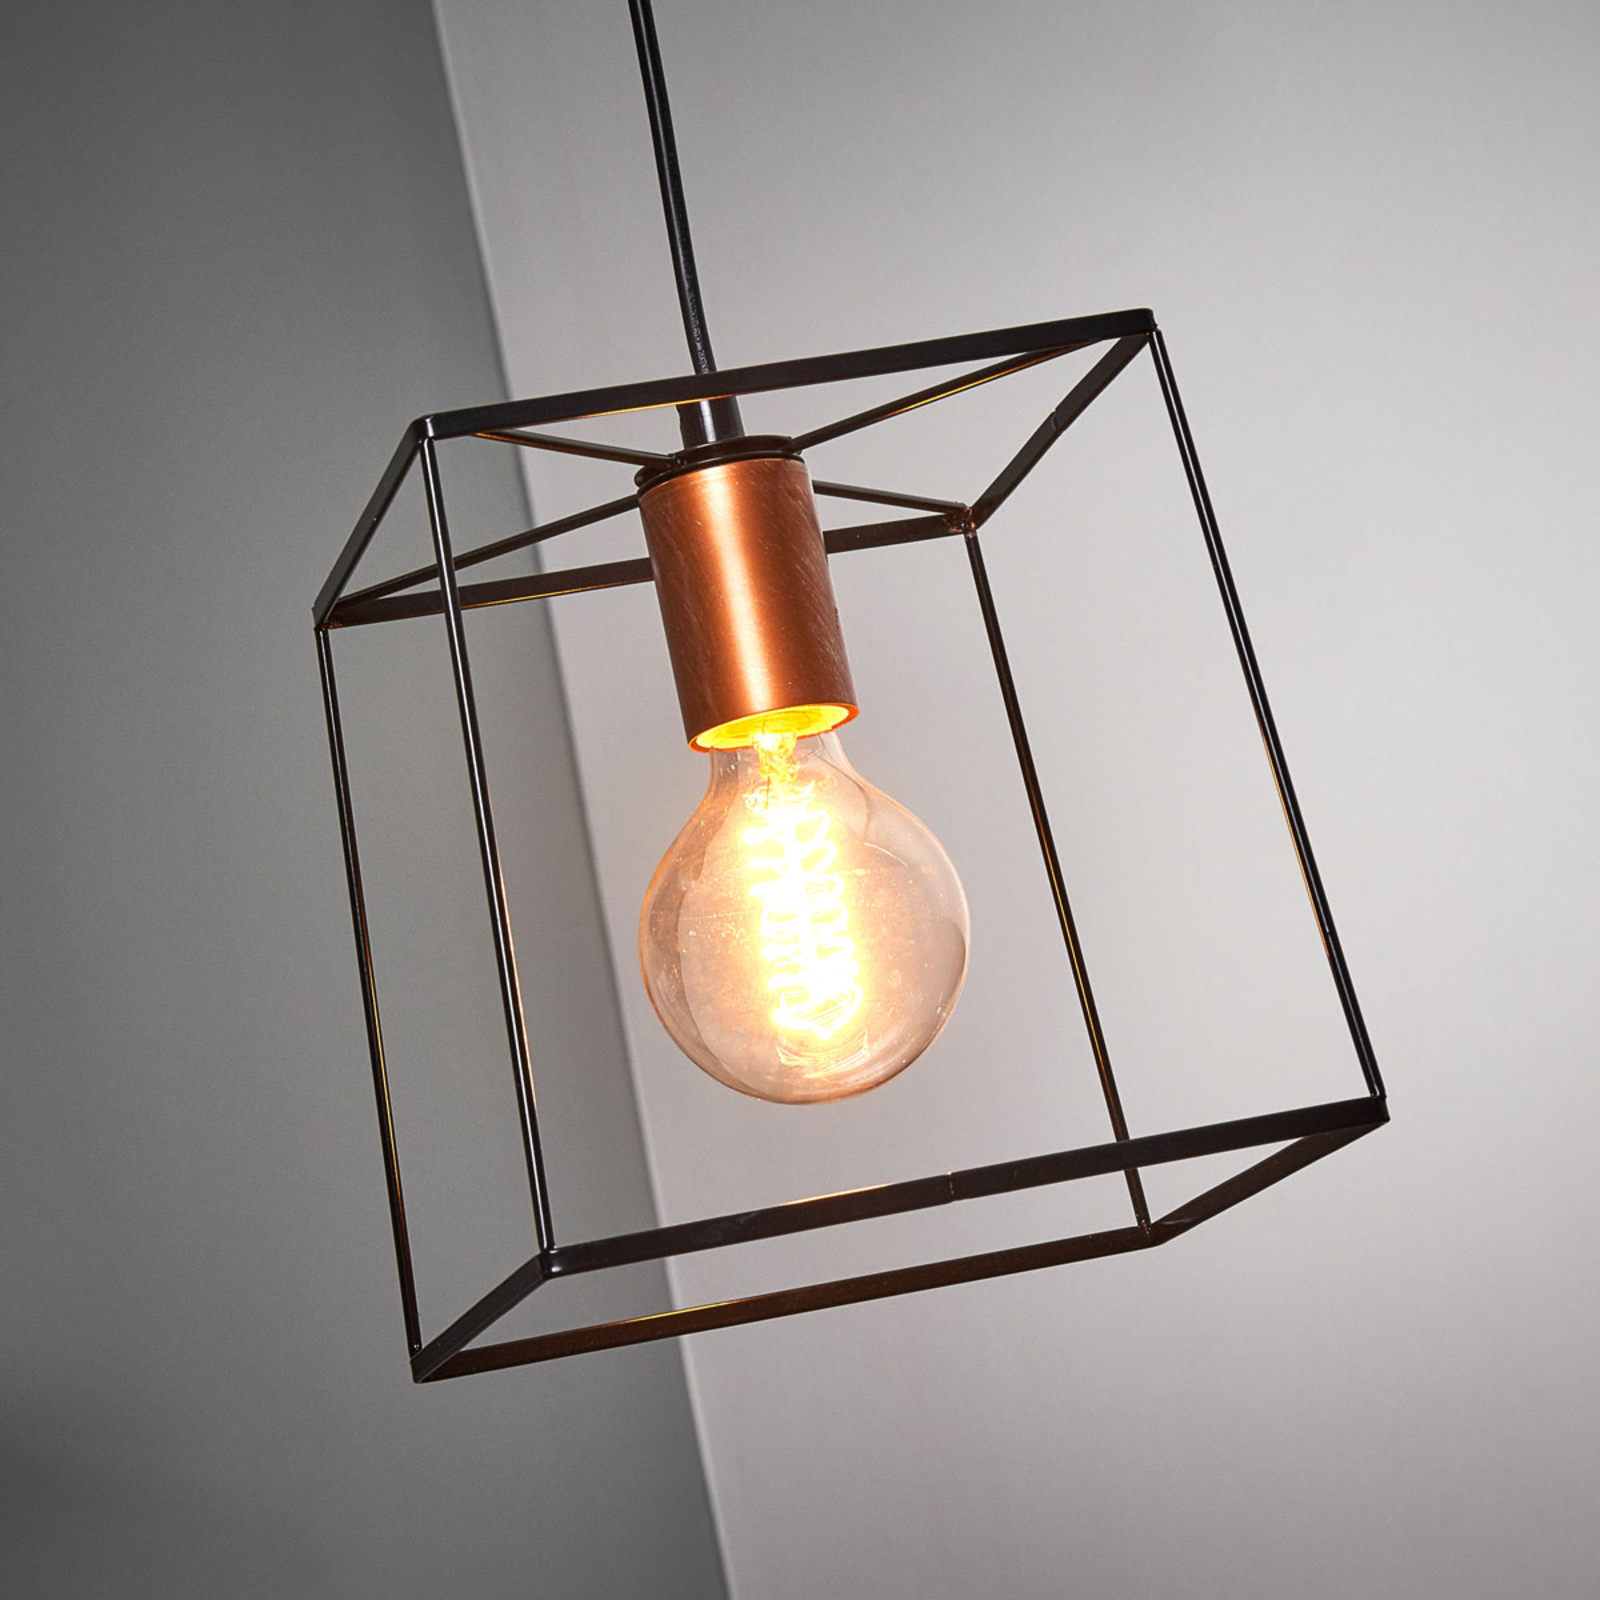 - hanglamp met metalen frame | Lampen24.nl